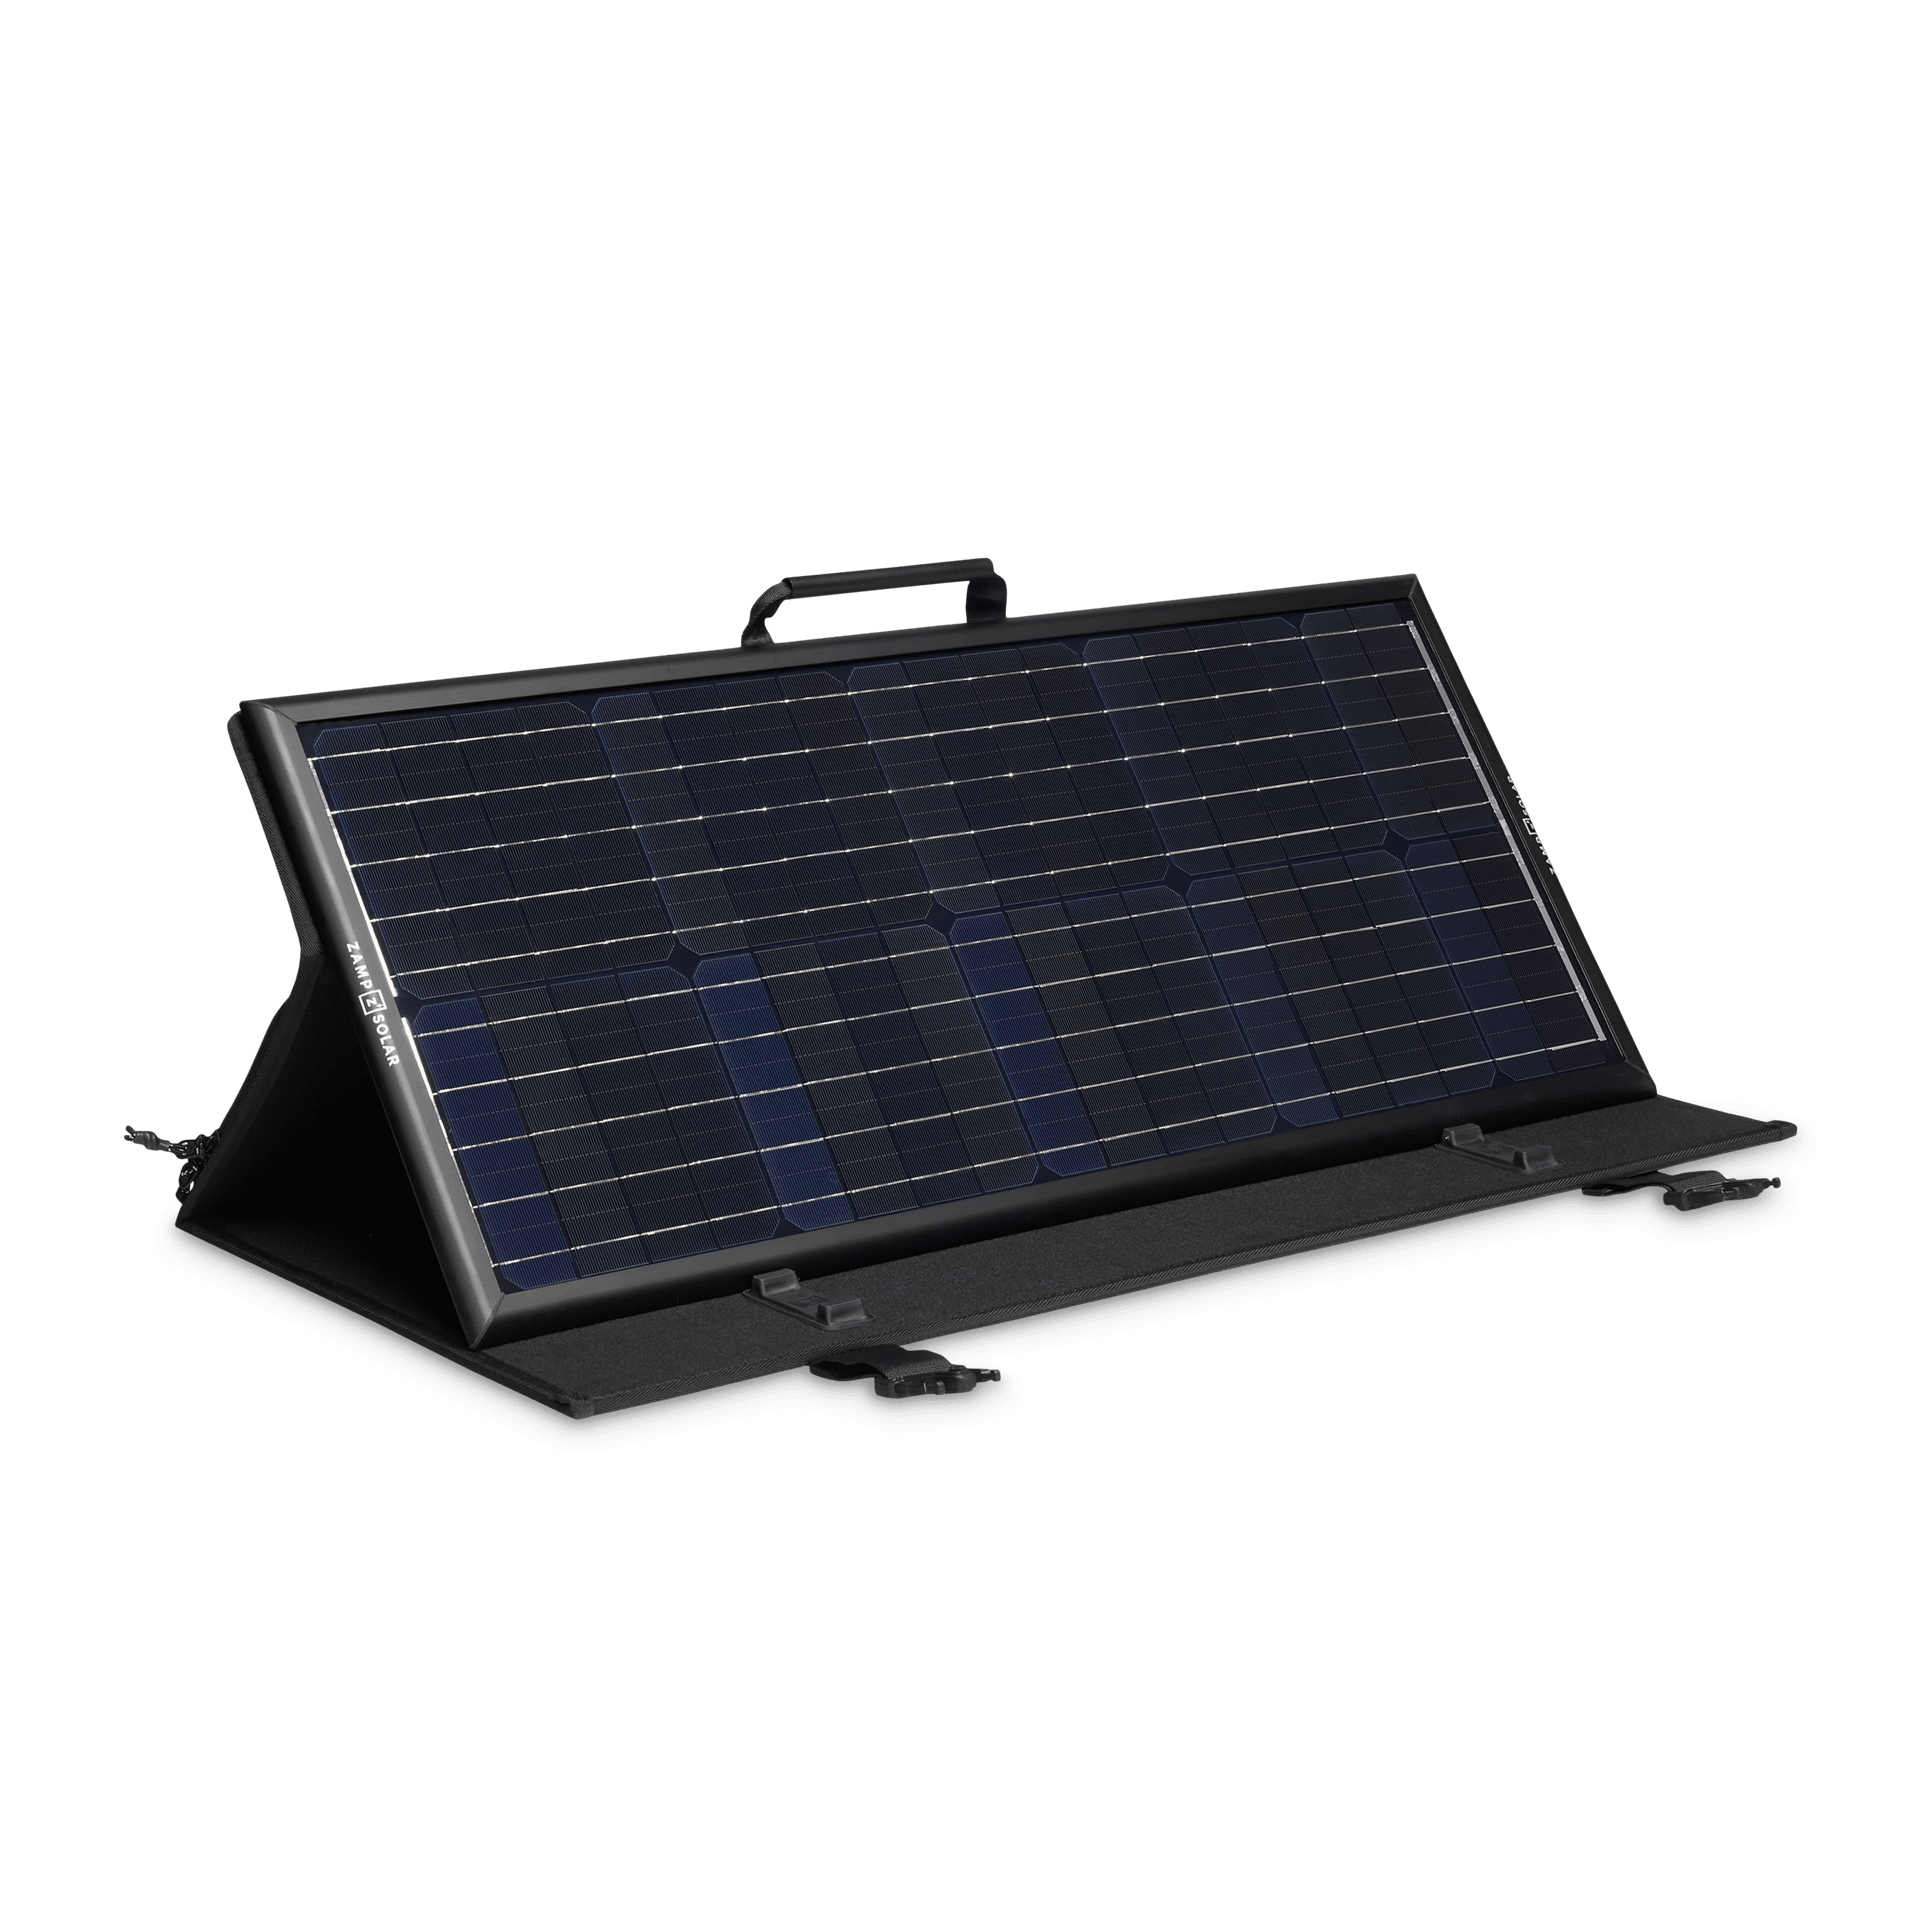 Mobile Power, Batteries & Solar Panels